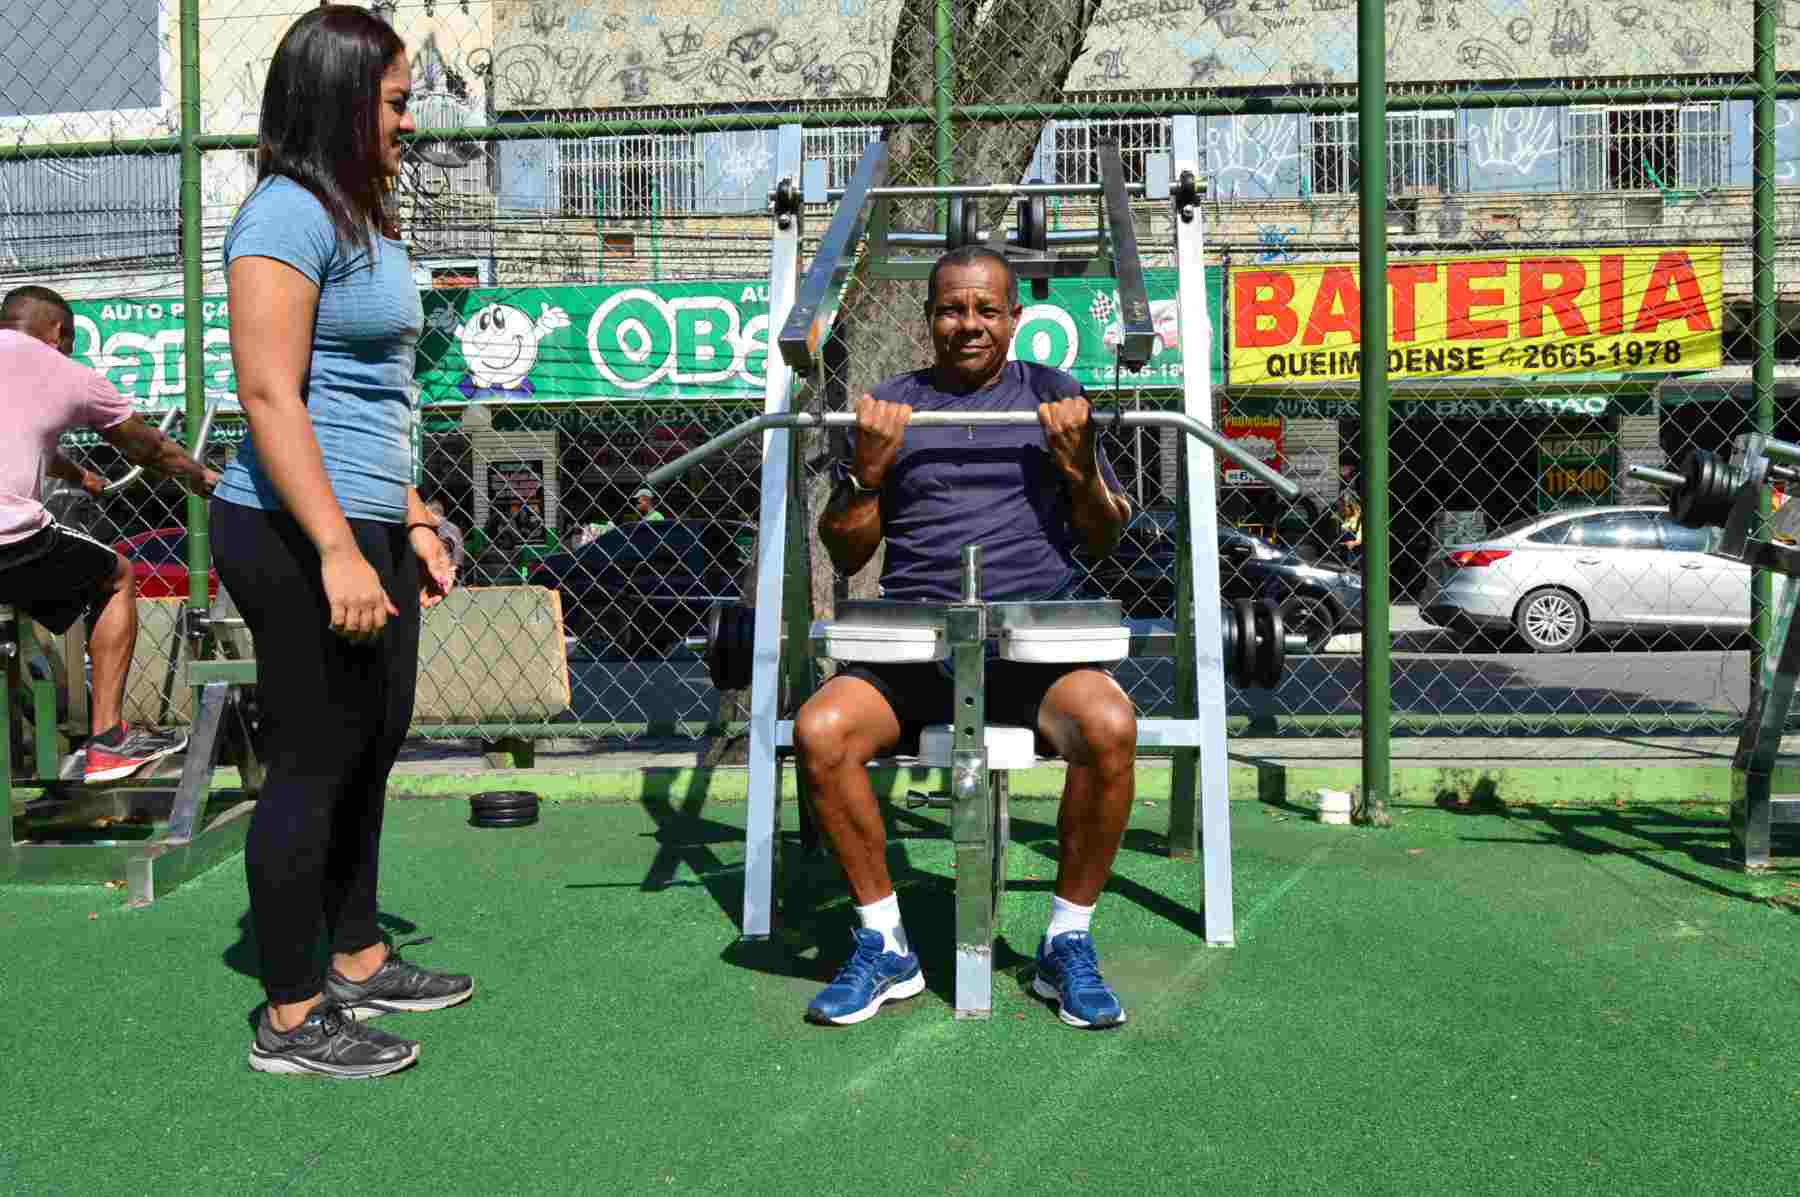 Espaços públicos incentivam a prática esportiva em Queimados